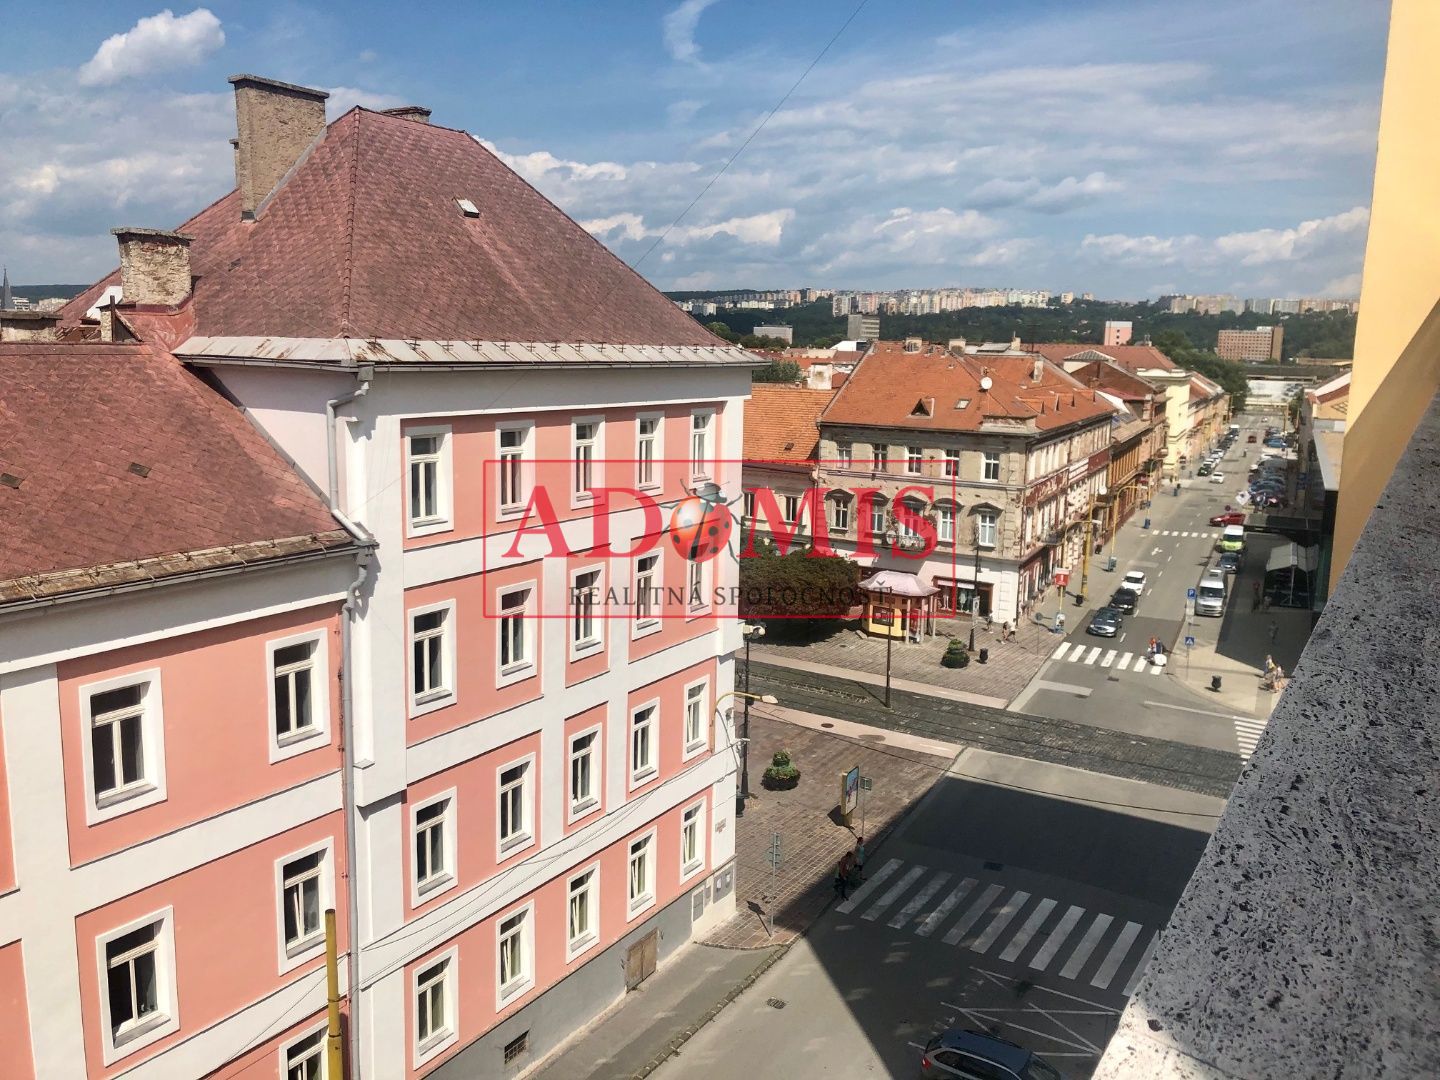 ADOMIS - predáme 1izb bezbariérový byt 53m2 v historickom centre Košíc,loggia, výťah, pivnica, Hlavná ulica.